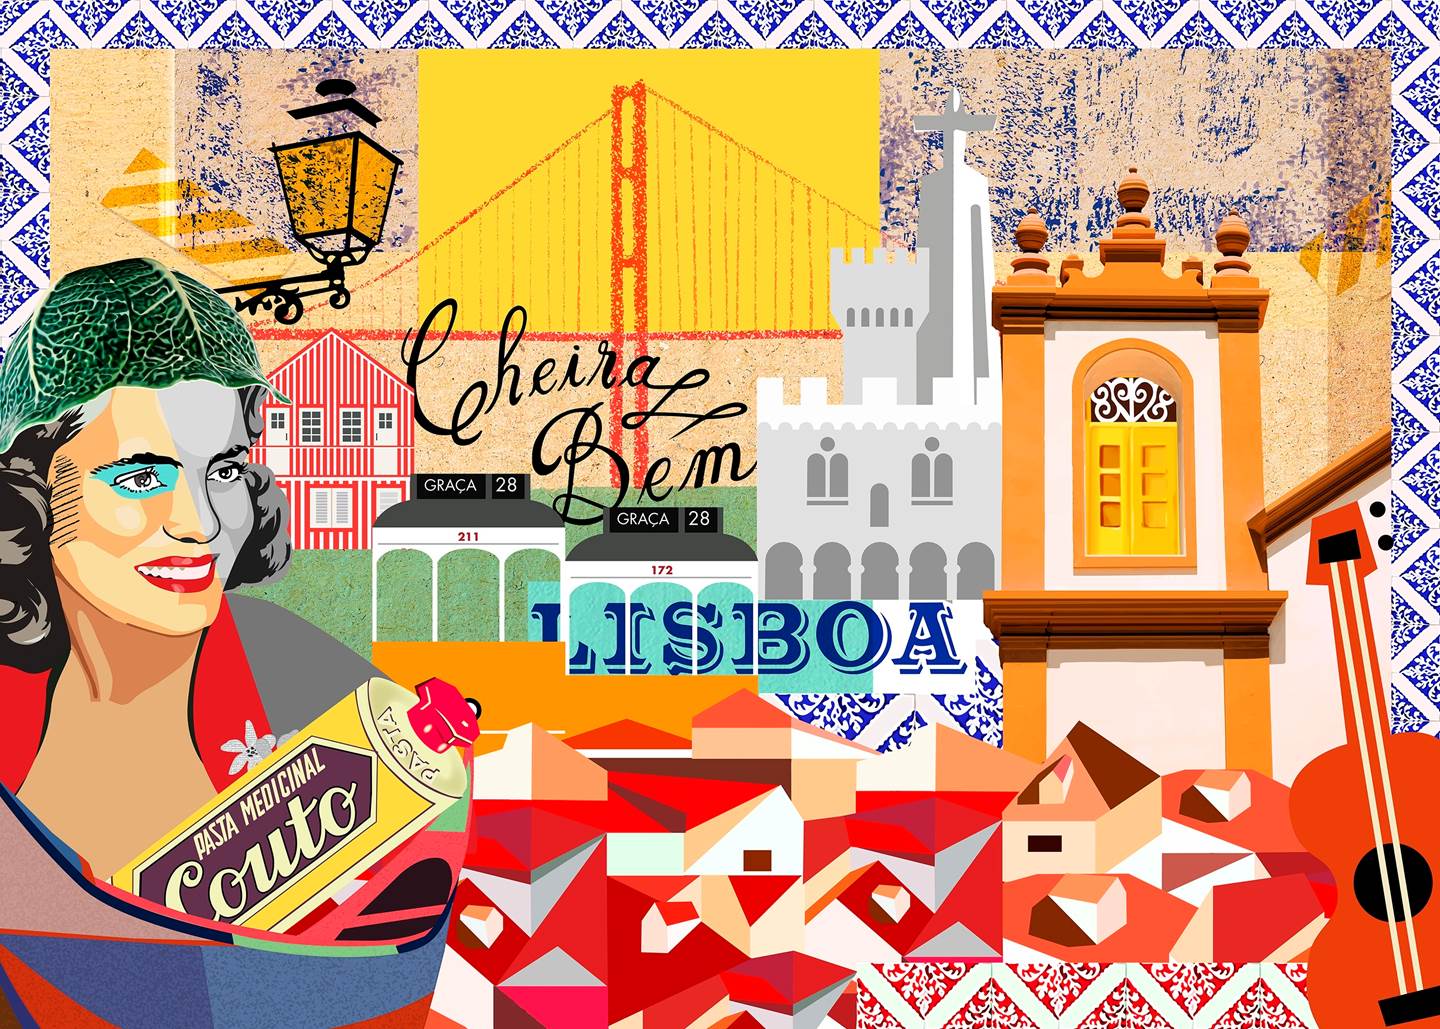 Tela "Cheira a Lisboa", original   Dessin et illustration par Maria João Faustino